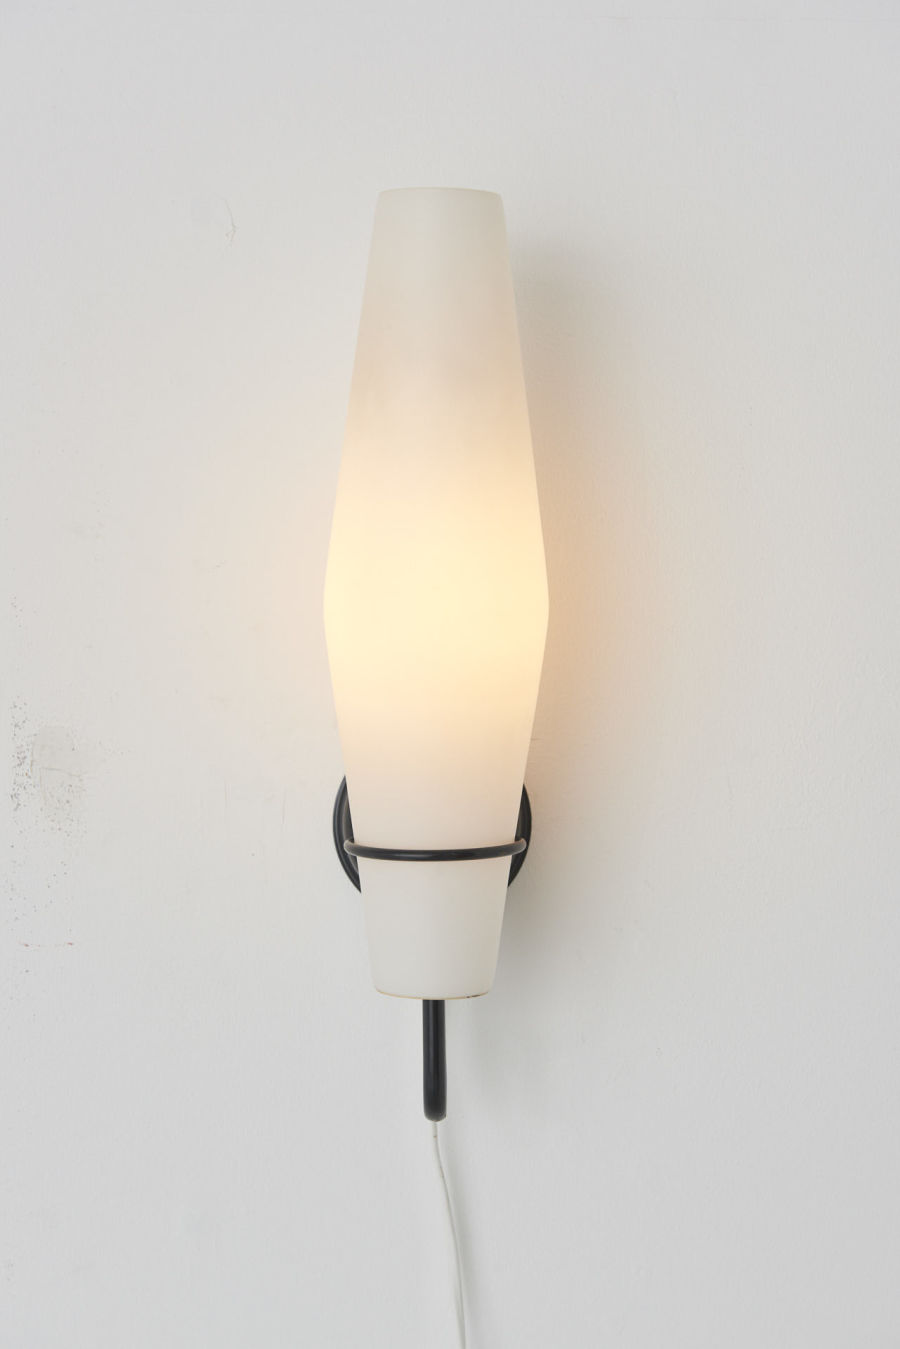 modestfurniture-vintage-2666-raak-wall-lamps-milk-glass-metal-bracket03